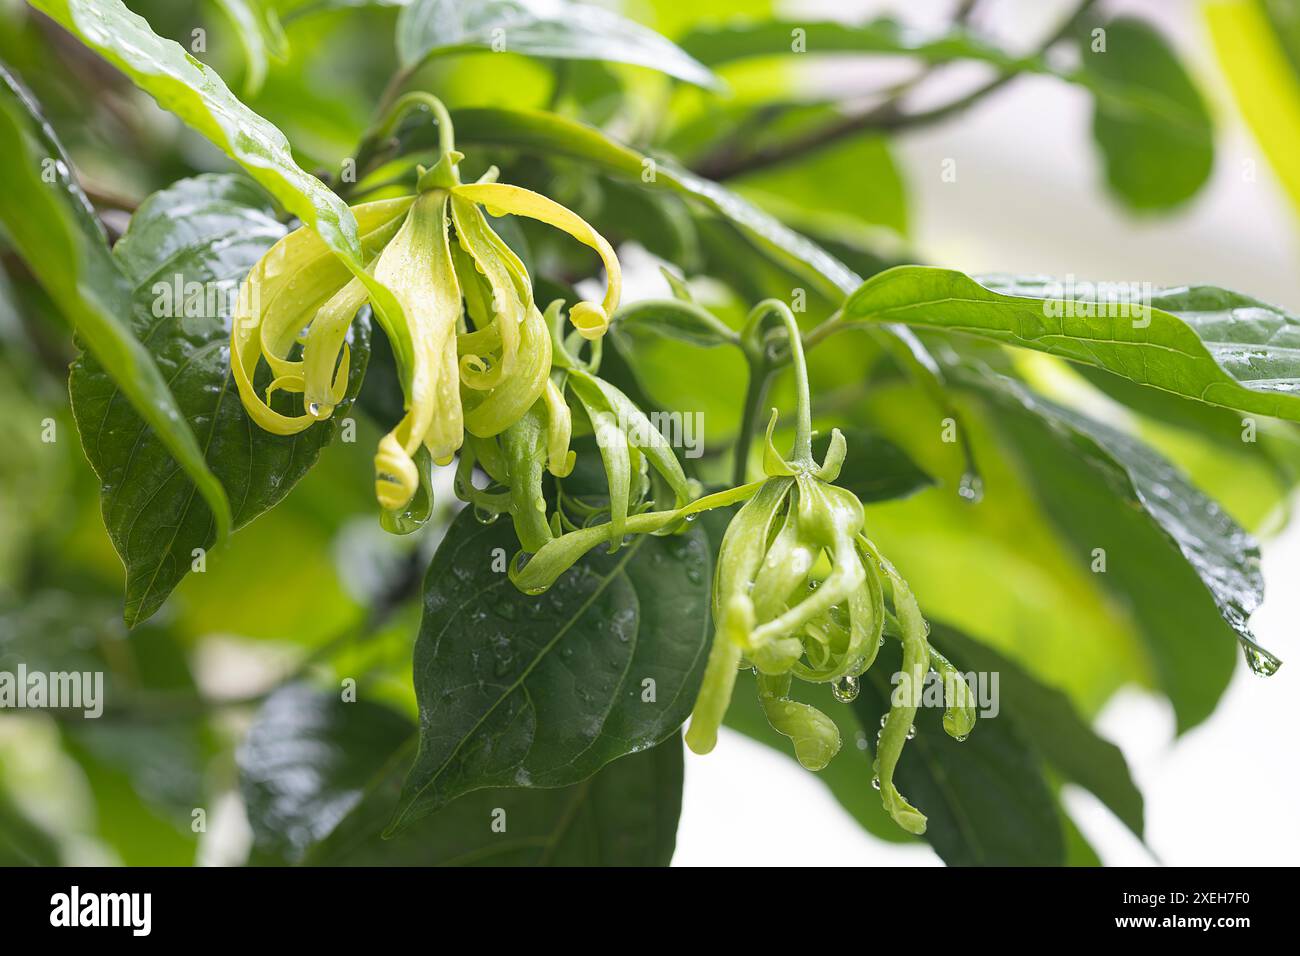 Detaillierte Darstellung der grünen Blume ( Desmos chinensis ) und Blätter mit Tautropfen, die natürliche Schönheit und Frische in einem üppigen Garten hervorheben. Stockfoto